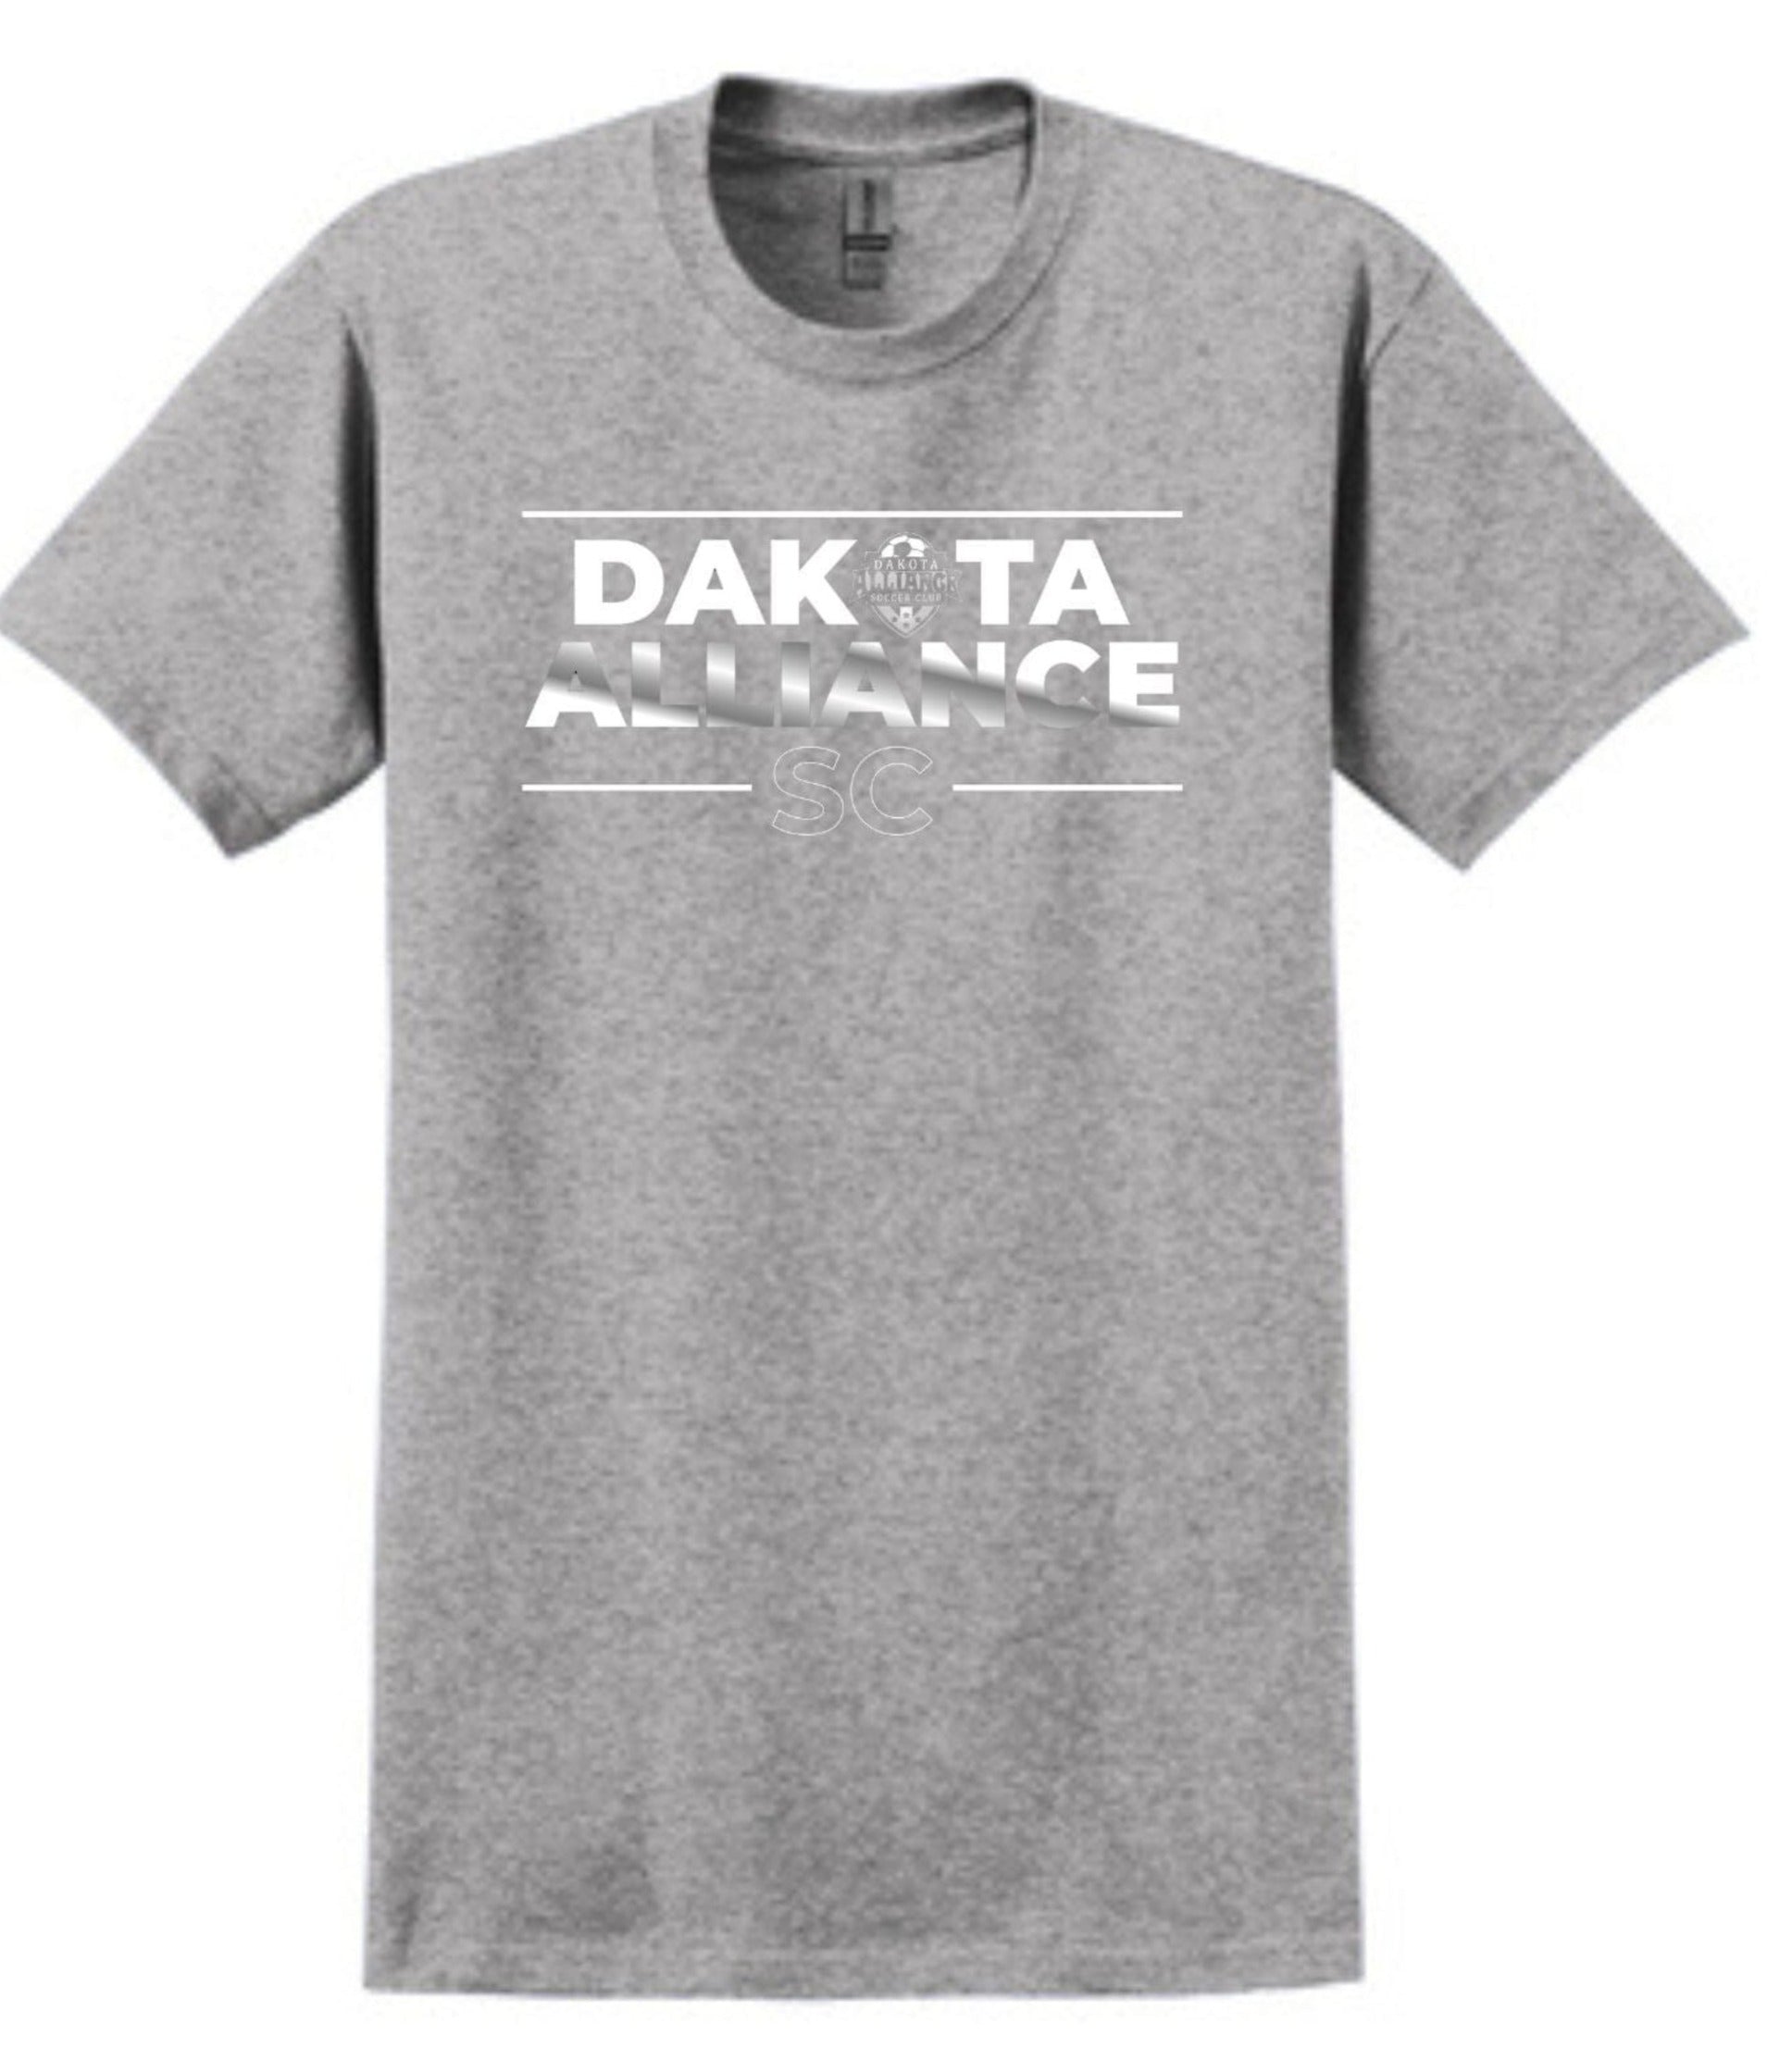 DASC Men's/Unisex Cotton T-Shirt - Fan Gear Shirt Gildan Men's Small Sport Grey Dakota Alliance